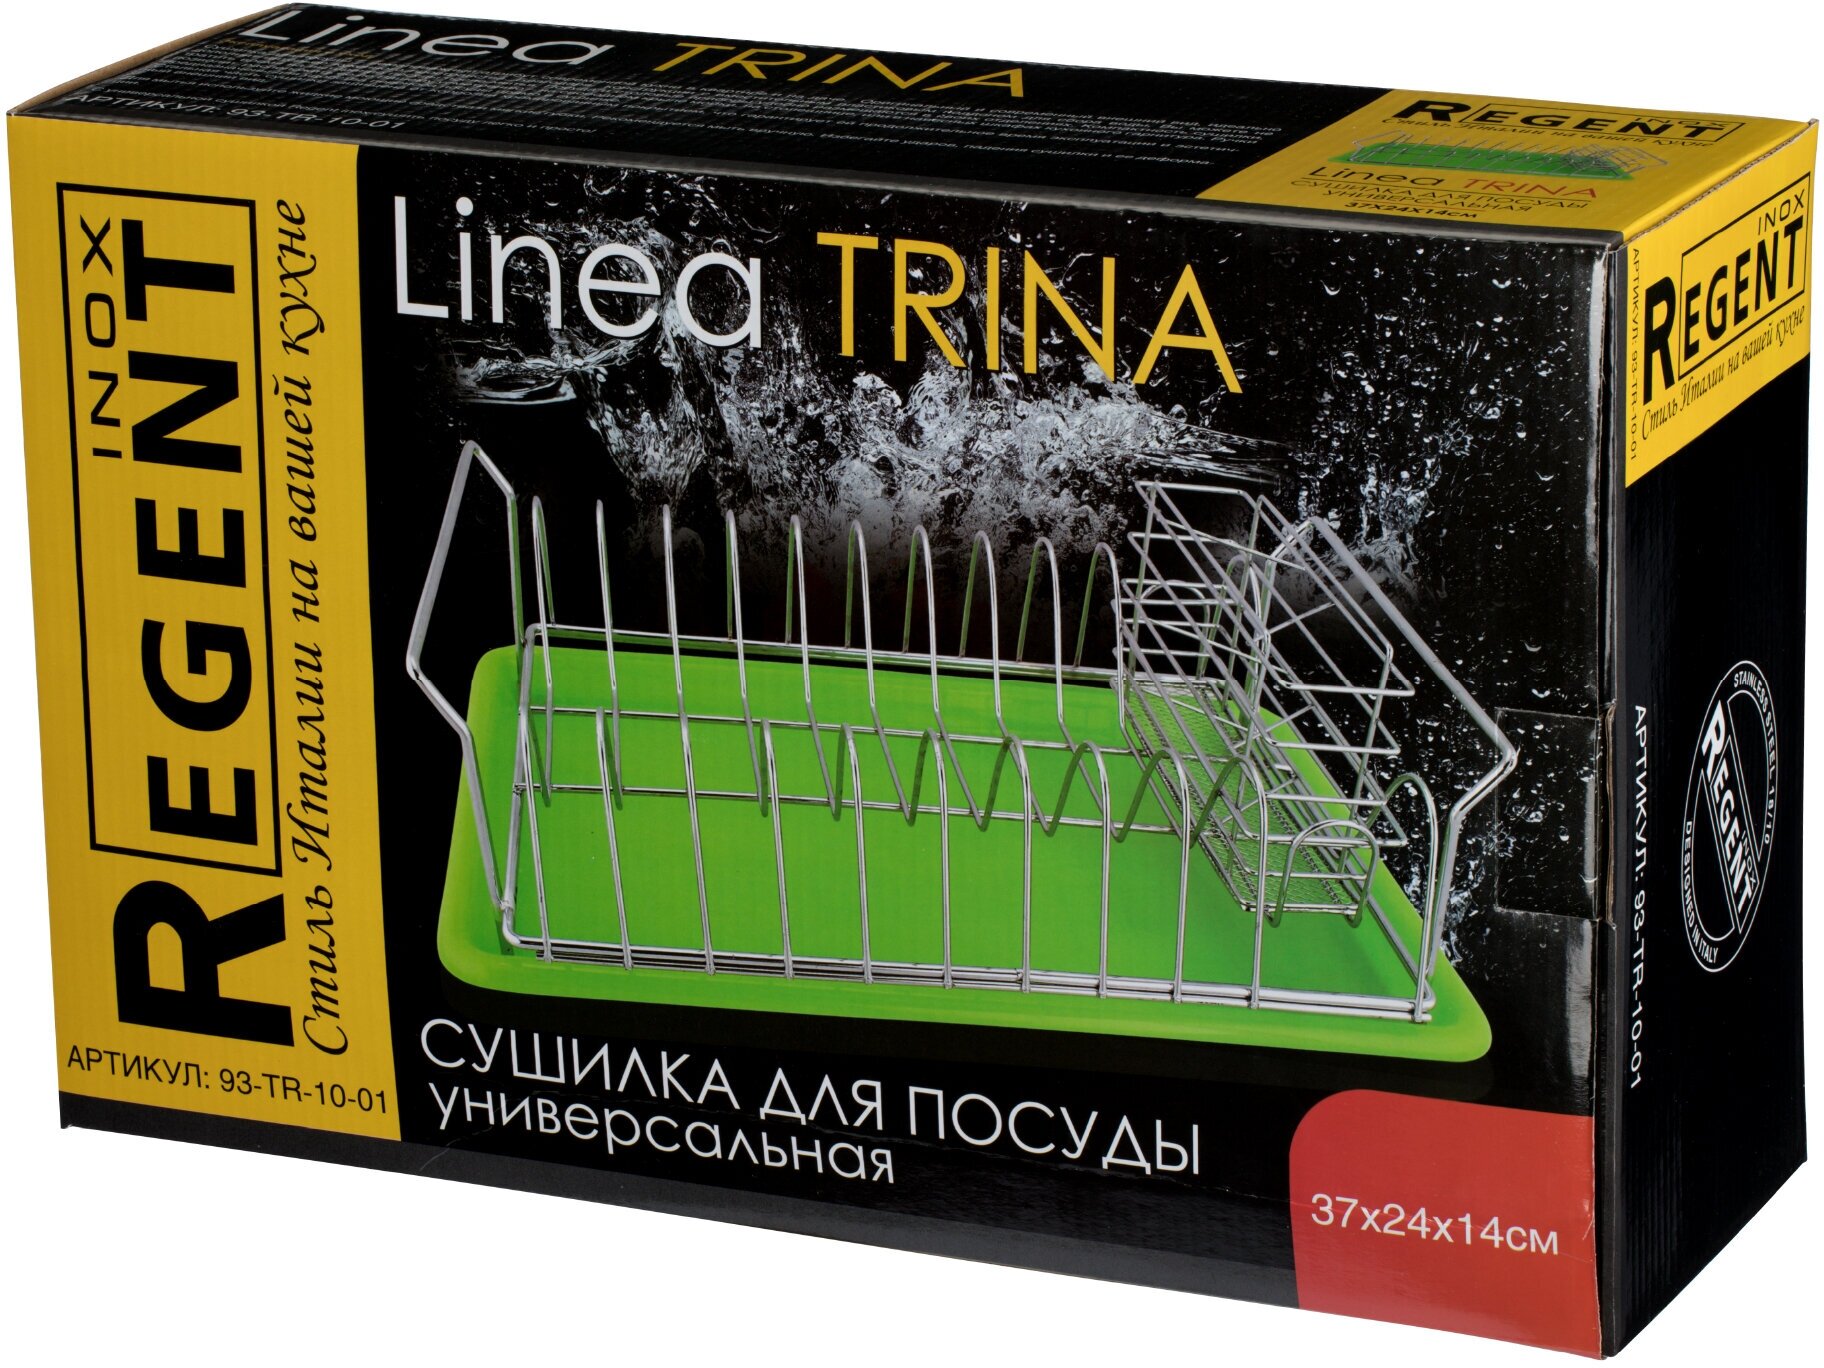 Сушилка для посуды Regent Inox TRINA универсальная, 37х24х14 см